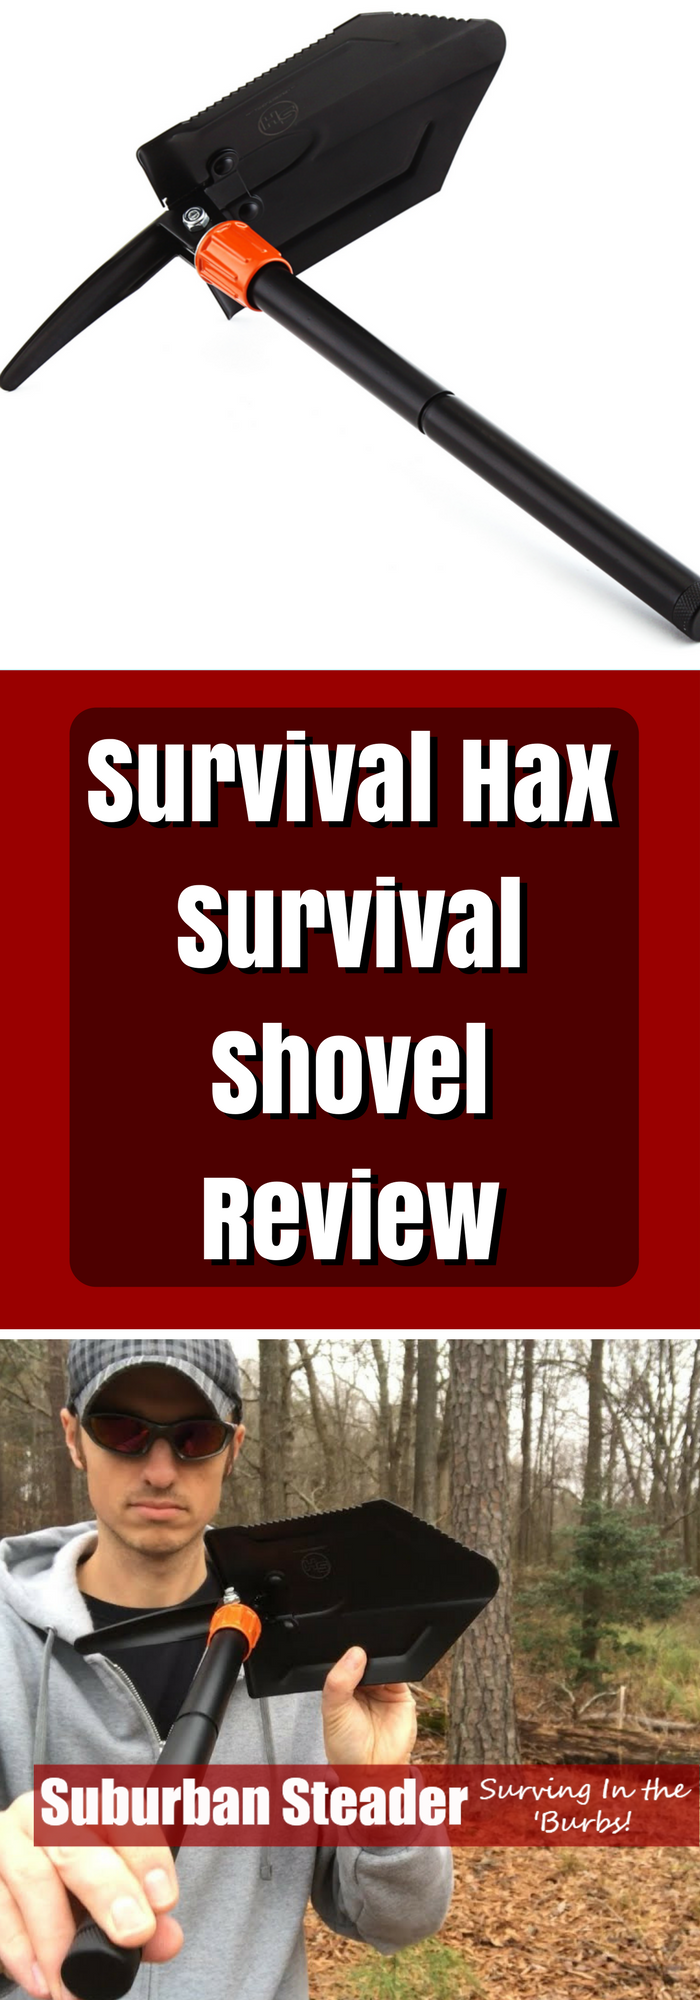 Survival Hax Survival Shovel